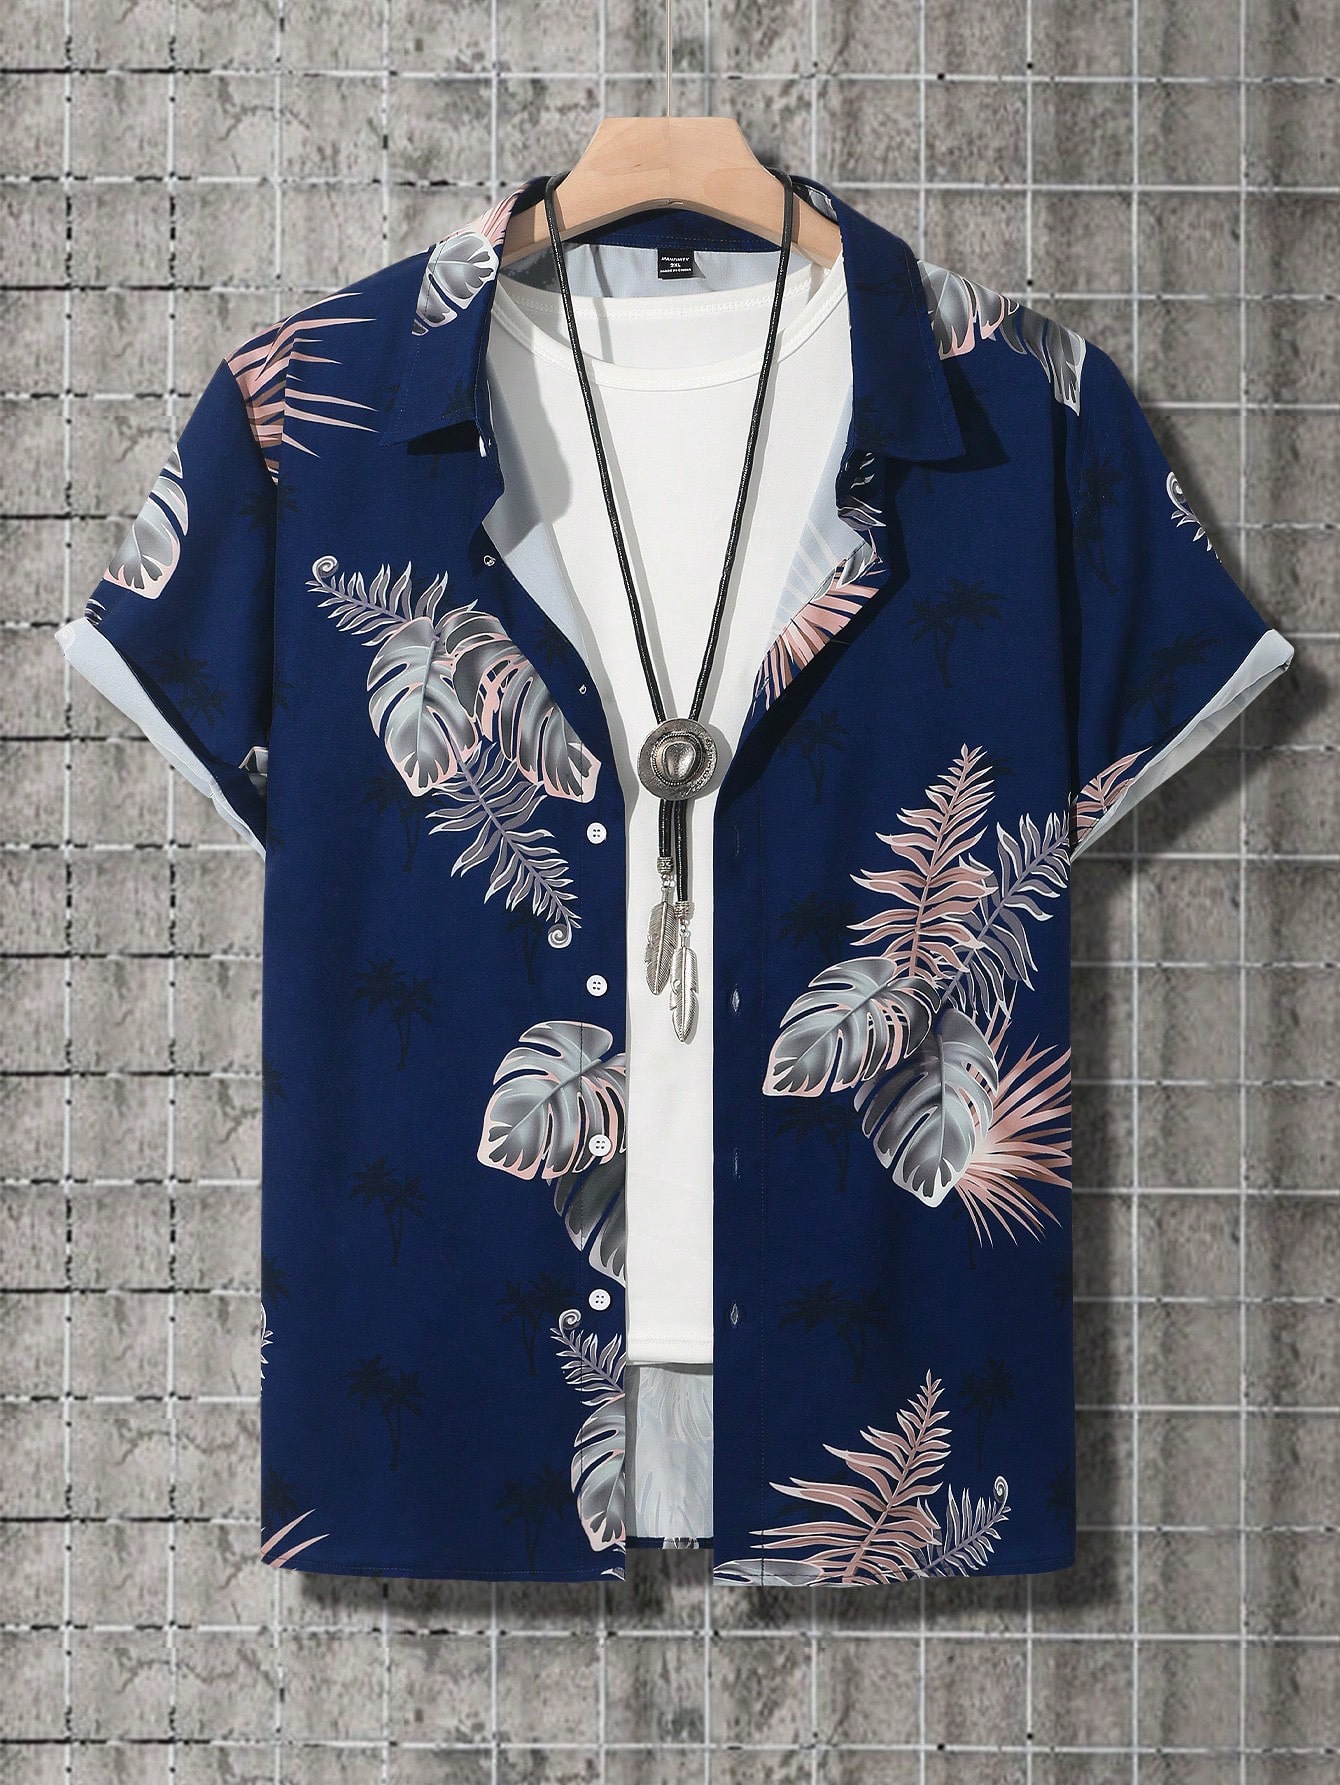 Мужская рубашка больших размеров Manfinity RSRT с короткими рукавами и тропическим растительным принтом, многоцветный